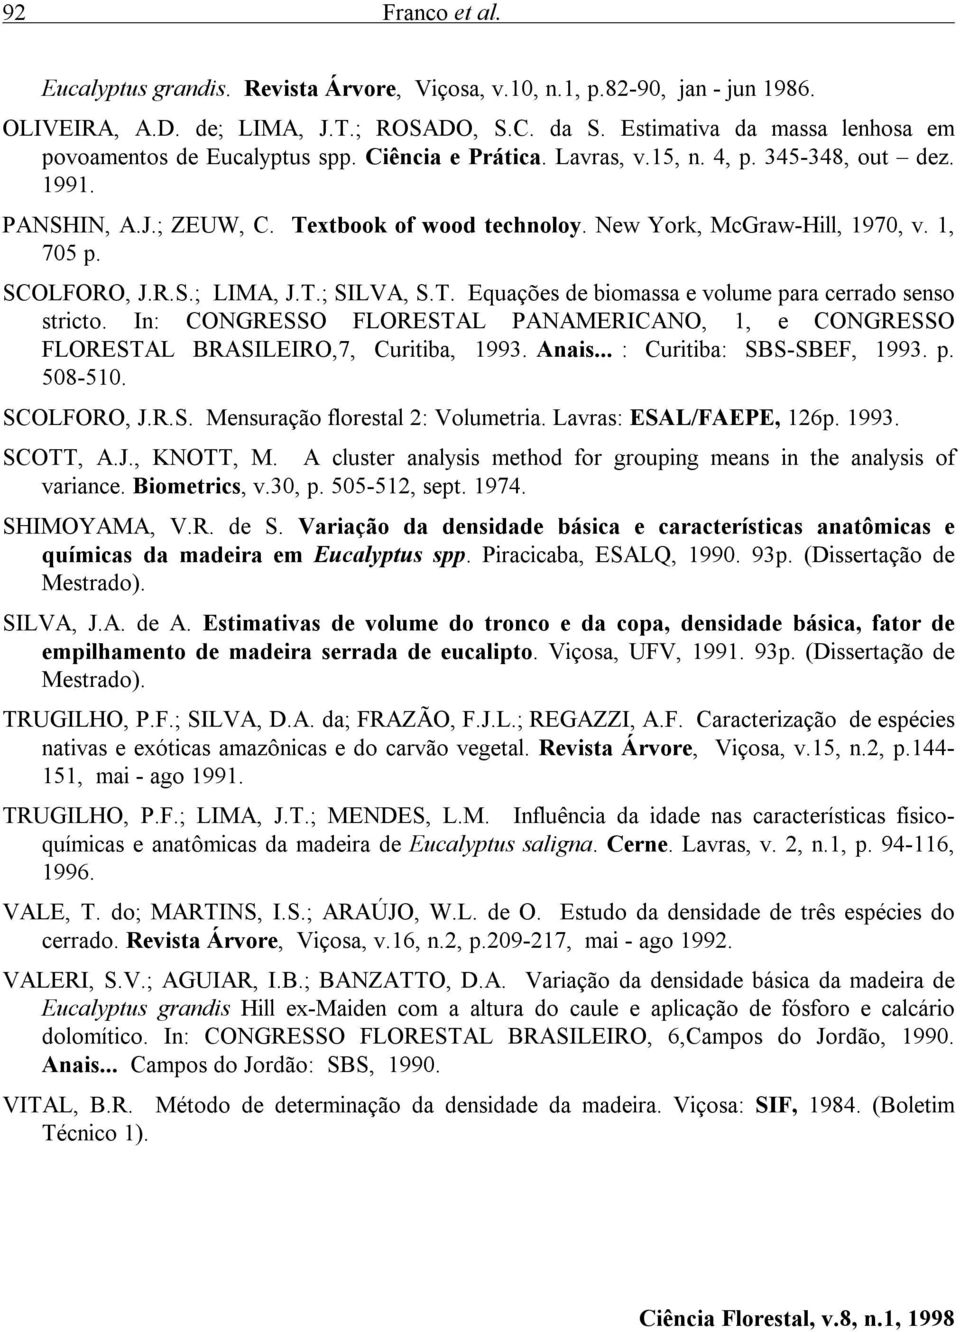 New York, McGraw-Hill, 1970, v. 1, 705 p. SCOLFORO, J.R.S.; LIMA, J.T.; SILVA, S.T. Equações de biomassa e volume para cerrado senso stricto.